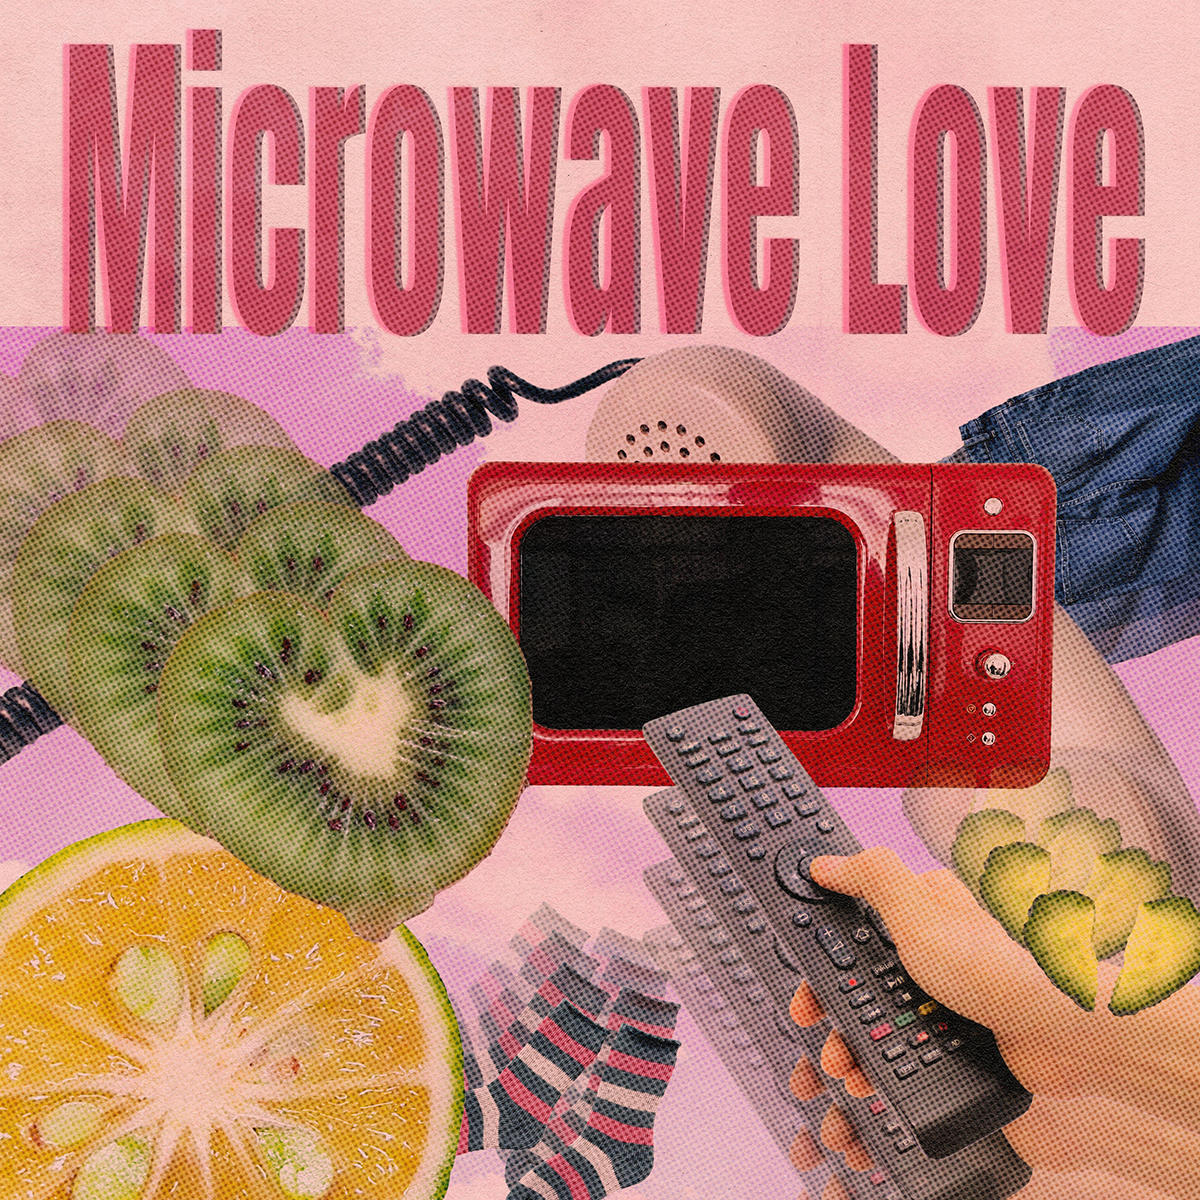 MicrowaveLove_jacket.jpg